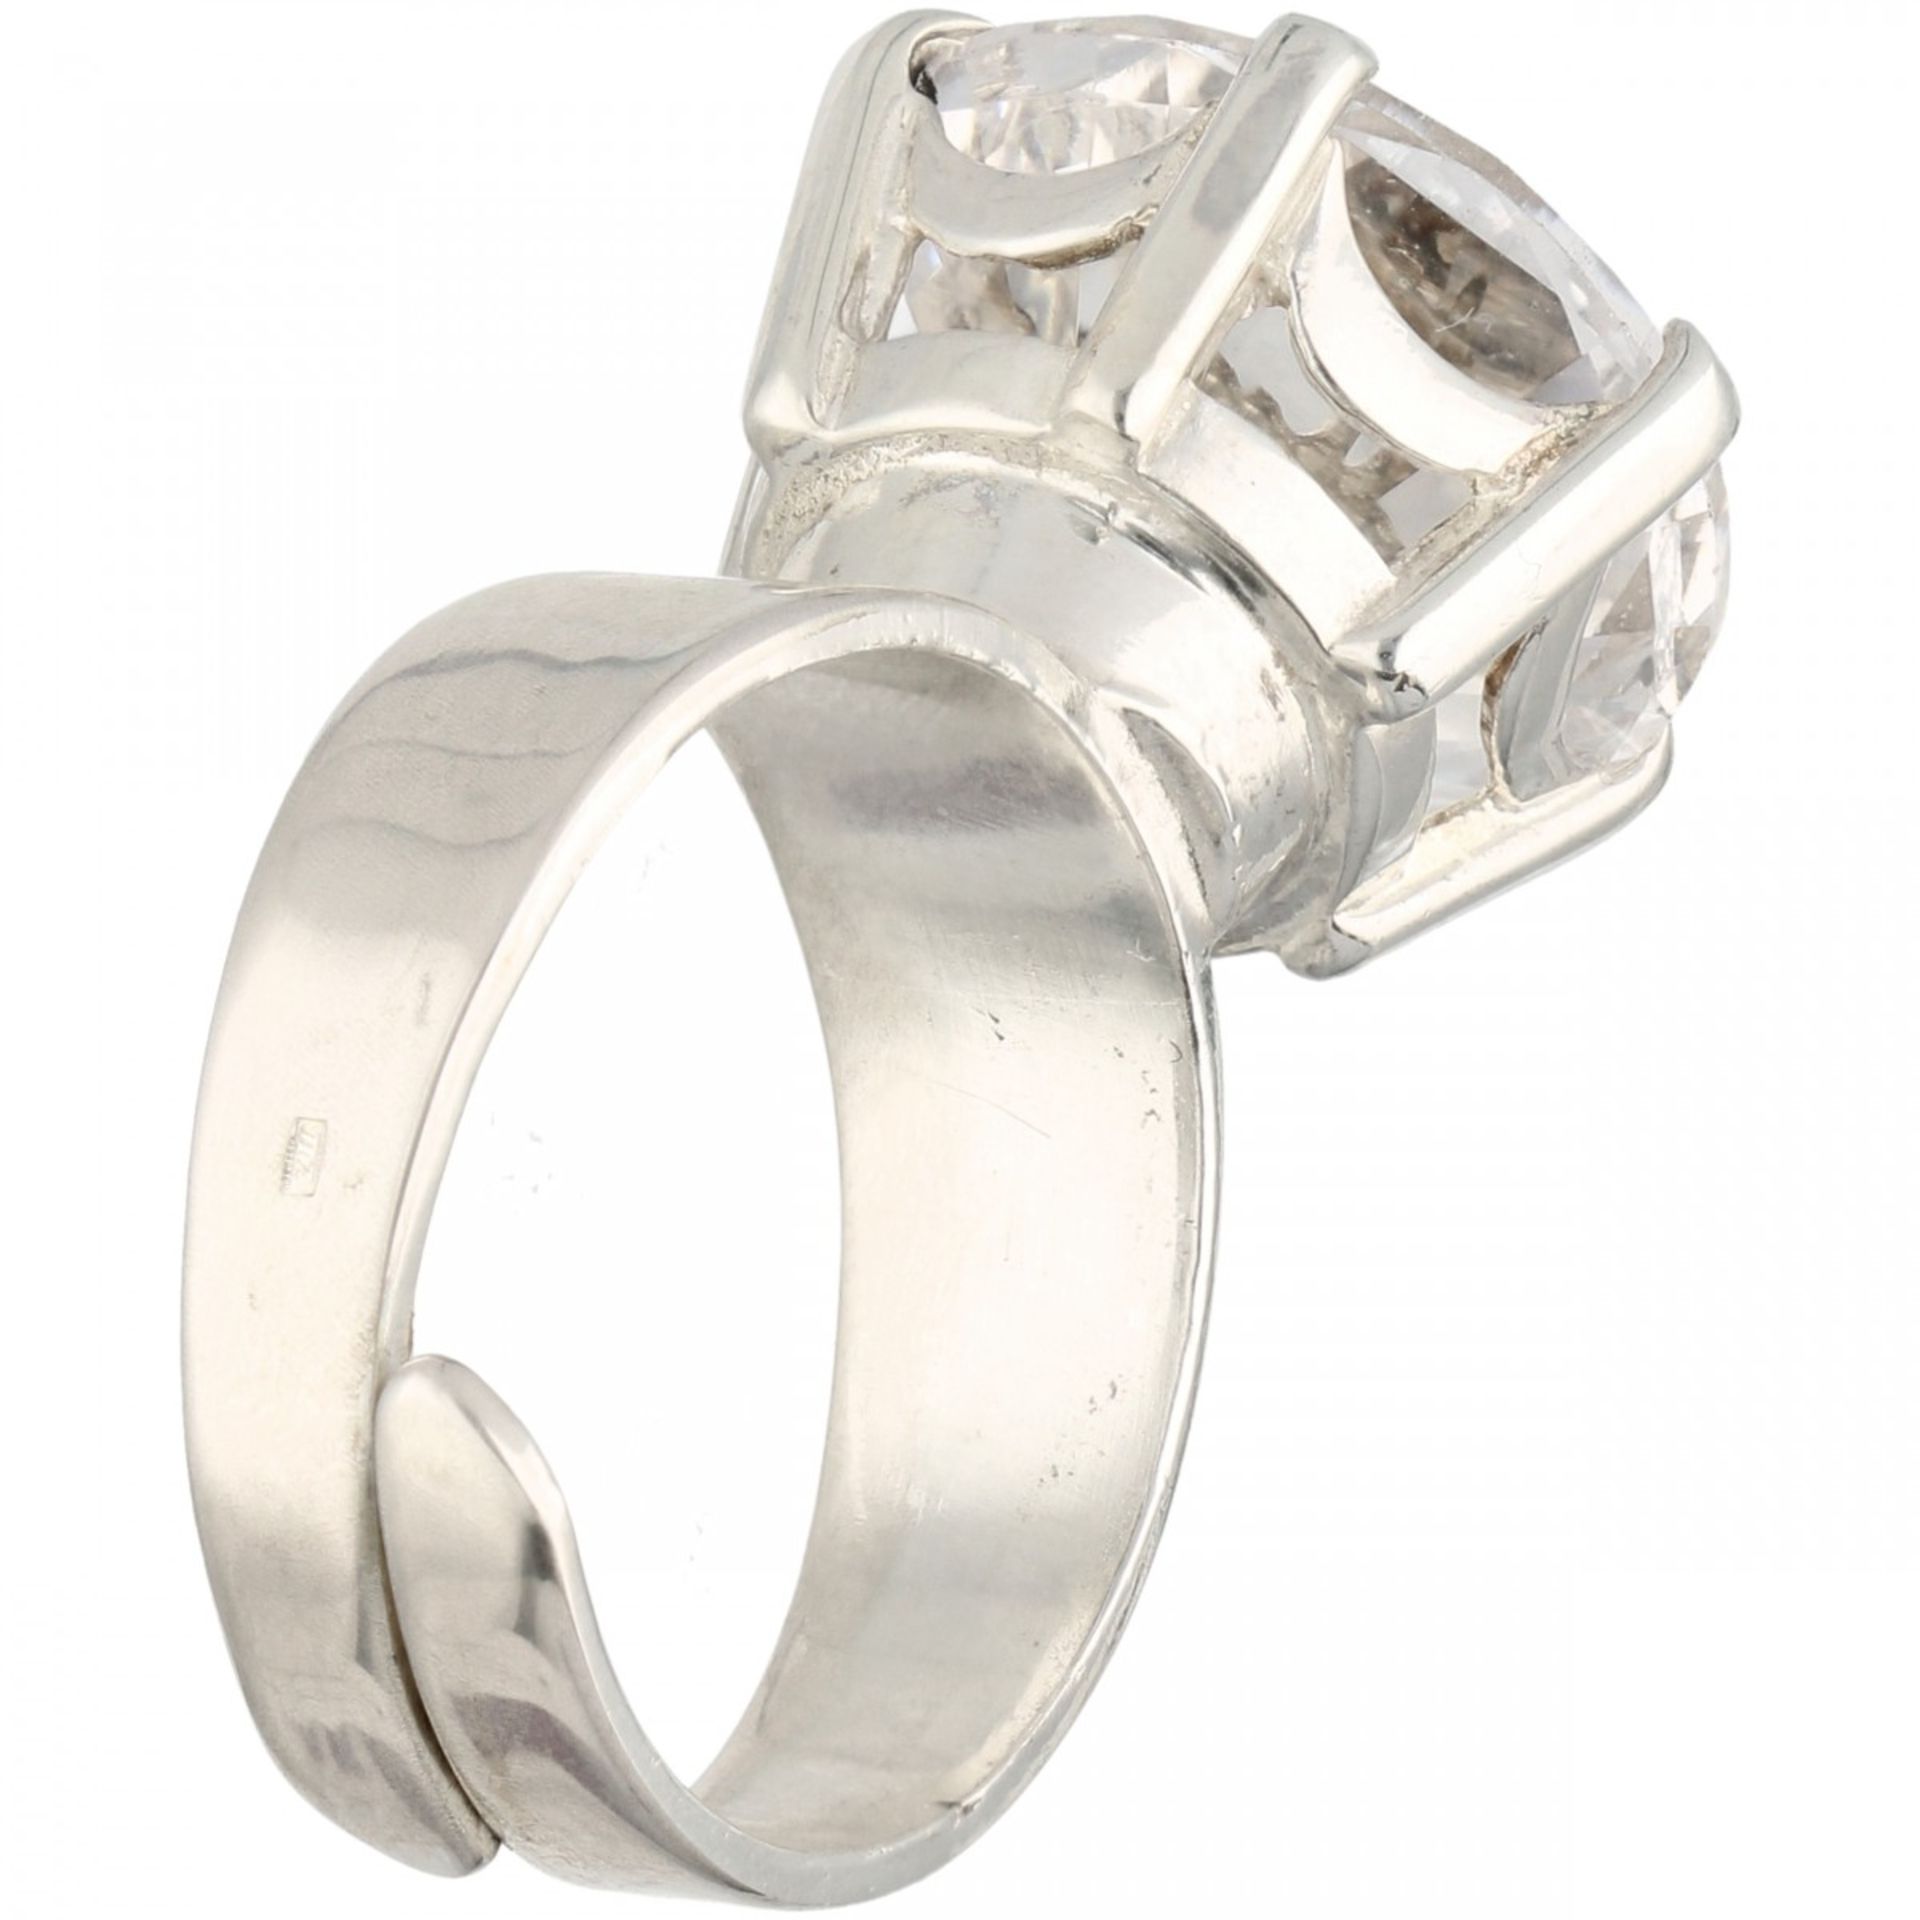 Zilveren Alton solitair ring, met bergkristal - 830/1000. - Image 3 of 4